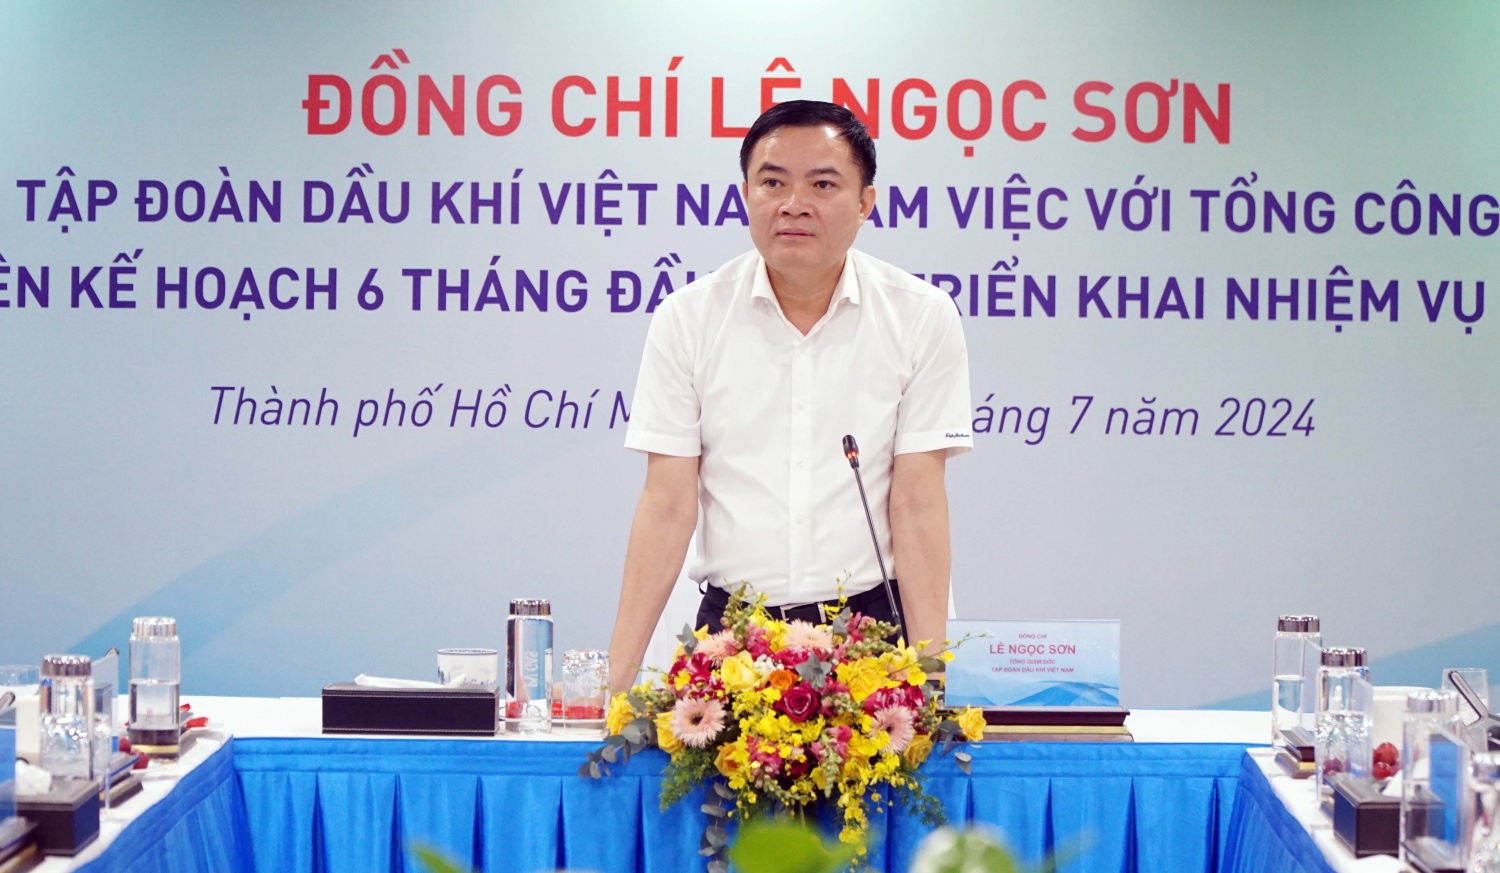 Tổng Giám đốc Petrovietnam Lê Ngọc Sơn phát biểu chỉ đạo